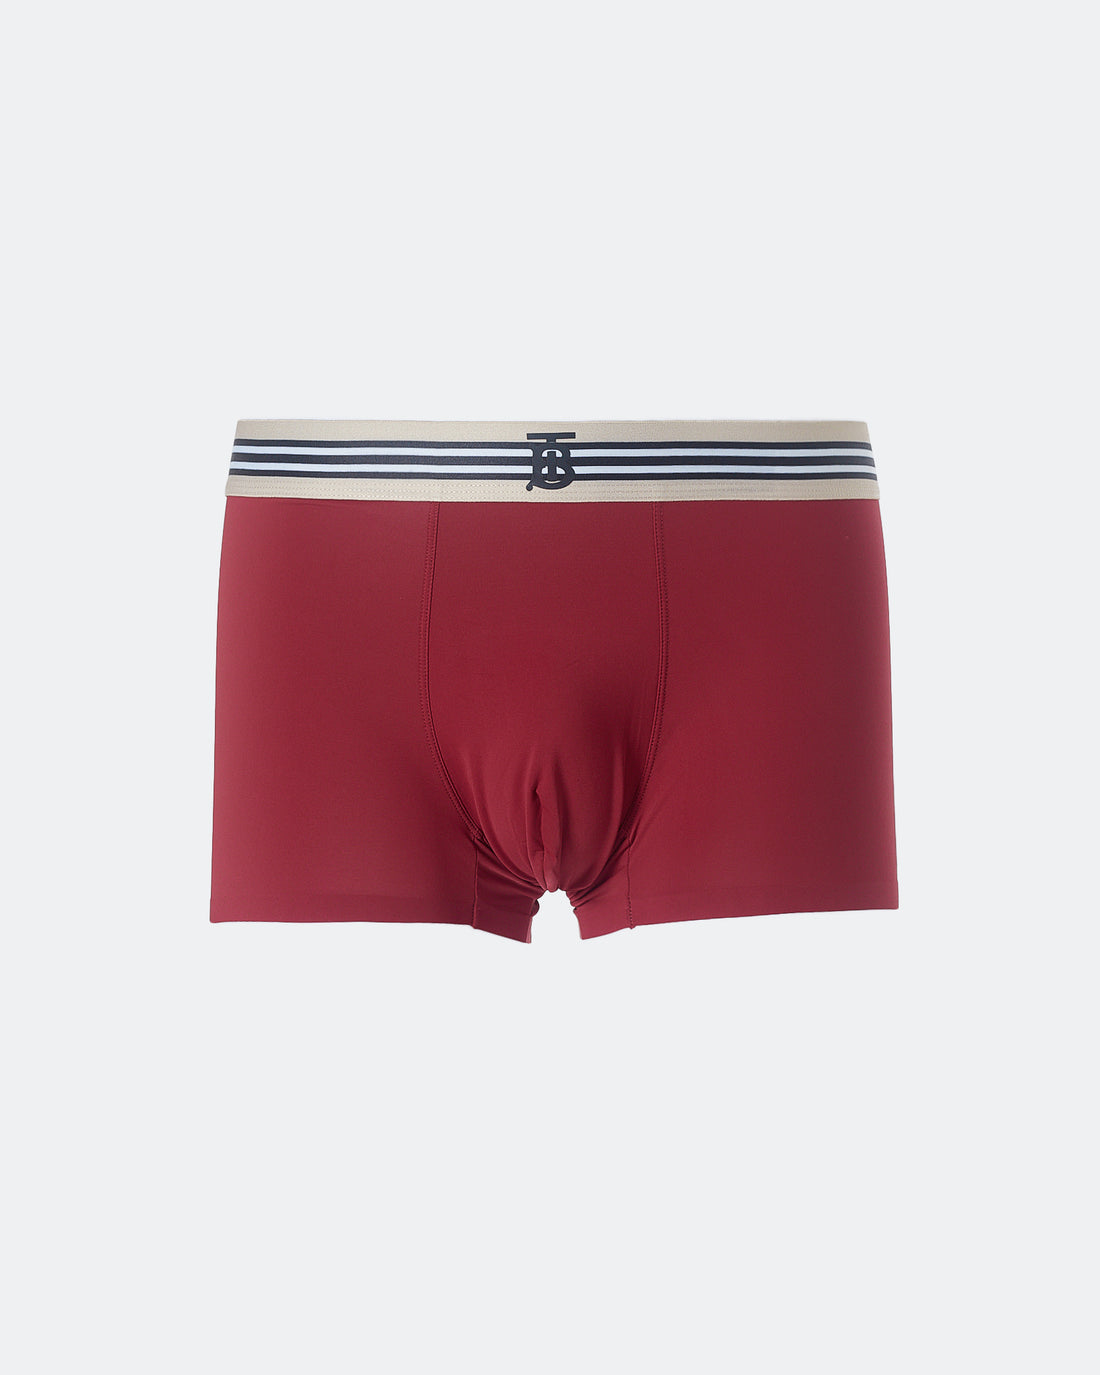 BUR Striped Waistband Men Red Underwear 6.90